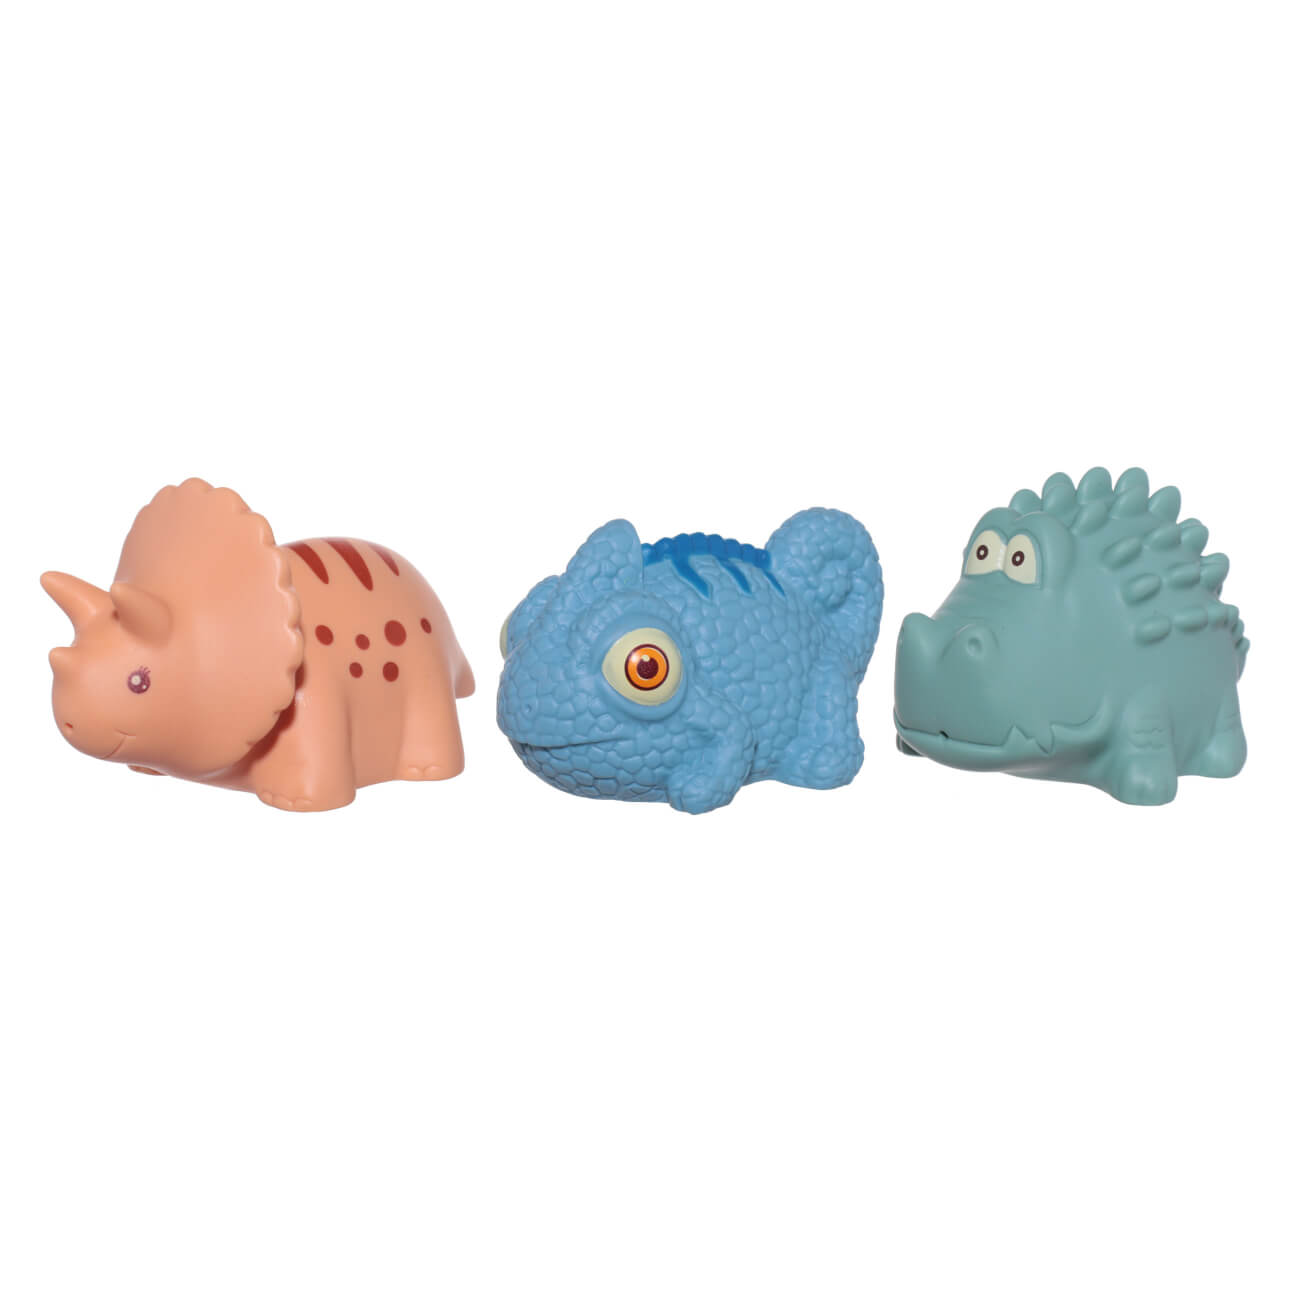 Набор игрушек для купания, 3 пр, ПВХ, цветной, Хамелеон/Динозавр/Крокодил, Kiddy